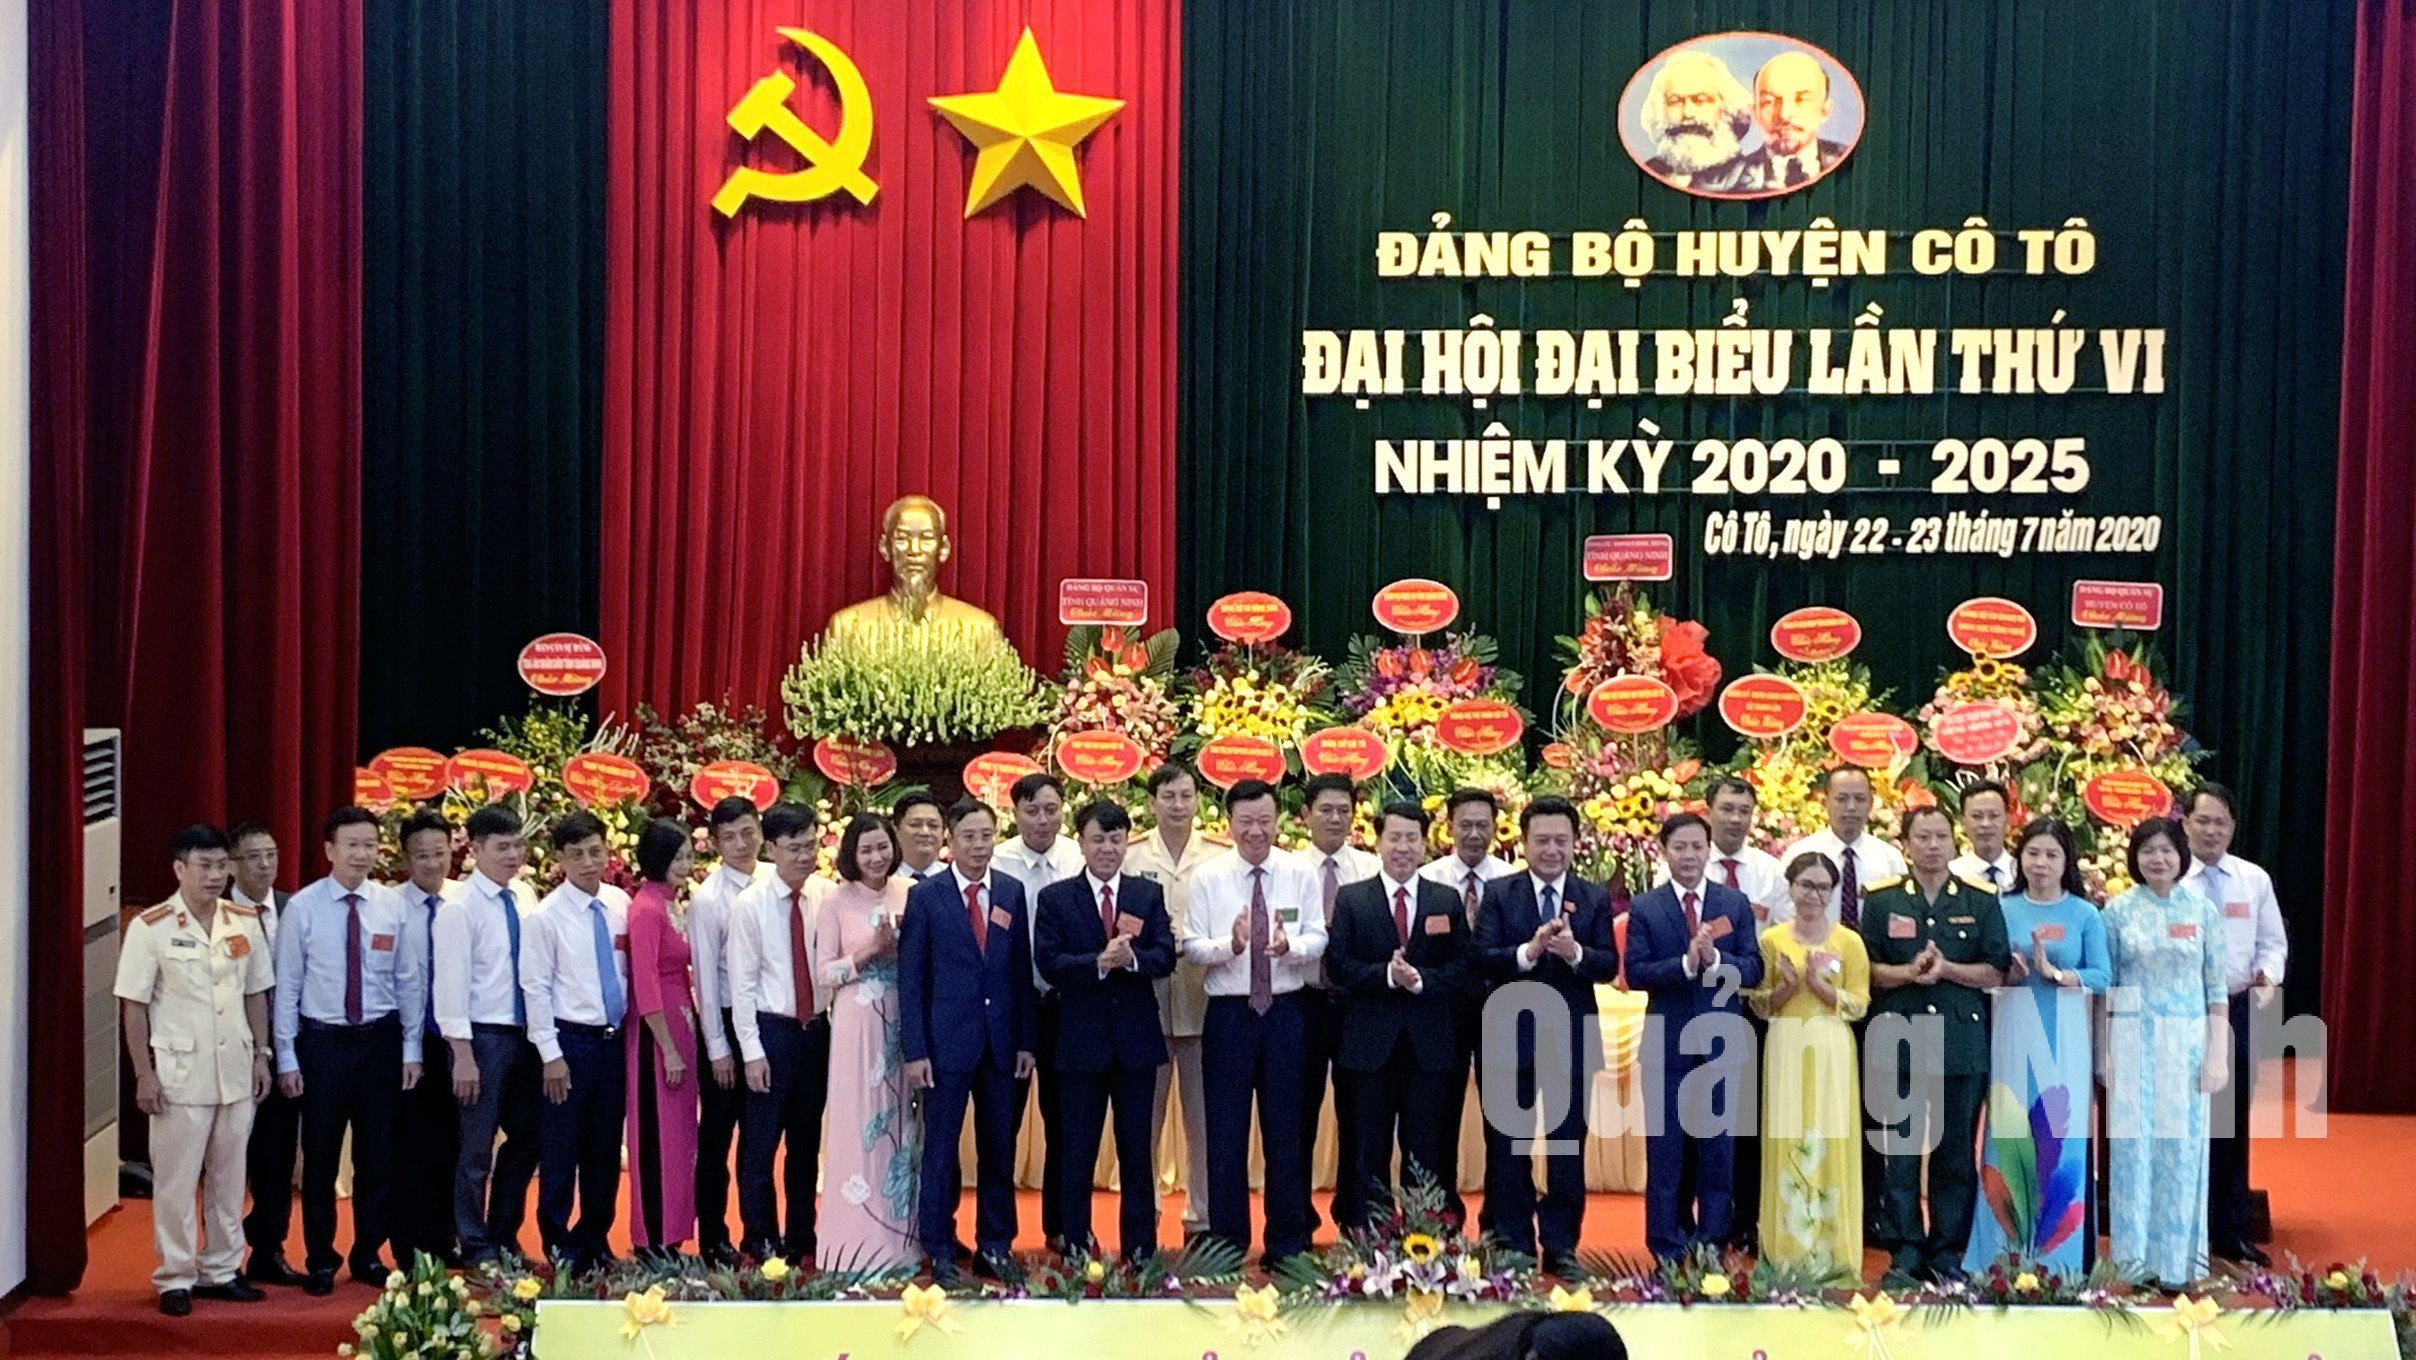 Các đồng chí lãnh đạo tỉnh tặng hoa chúc mừng BCH Đảng bộ huyện Cô Tô khóa VI, nhiệm kỳ 2020 - 2025 (7-2020). Ảnh: Hoàng Phương (Trung tâm TTVH Cô Tô)